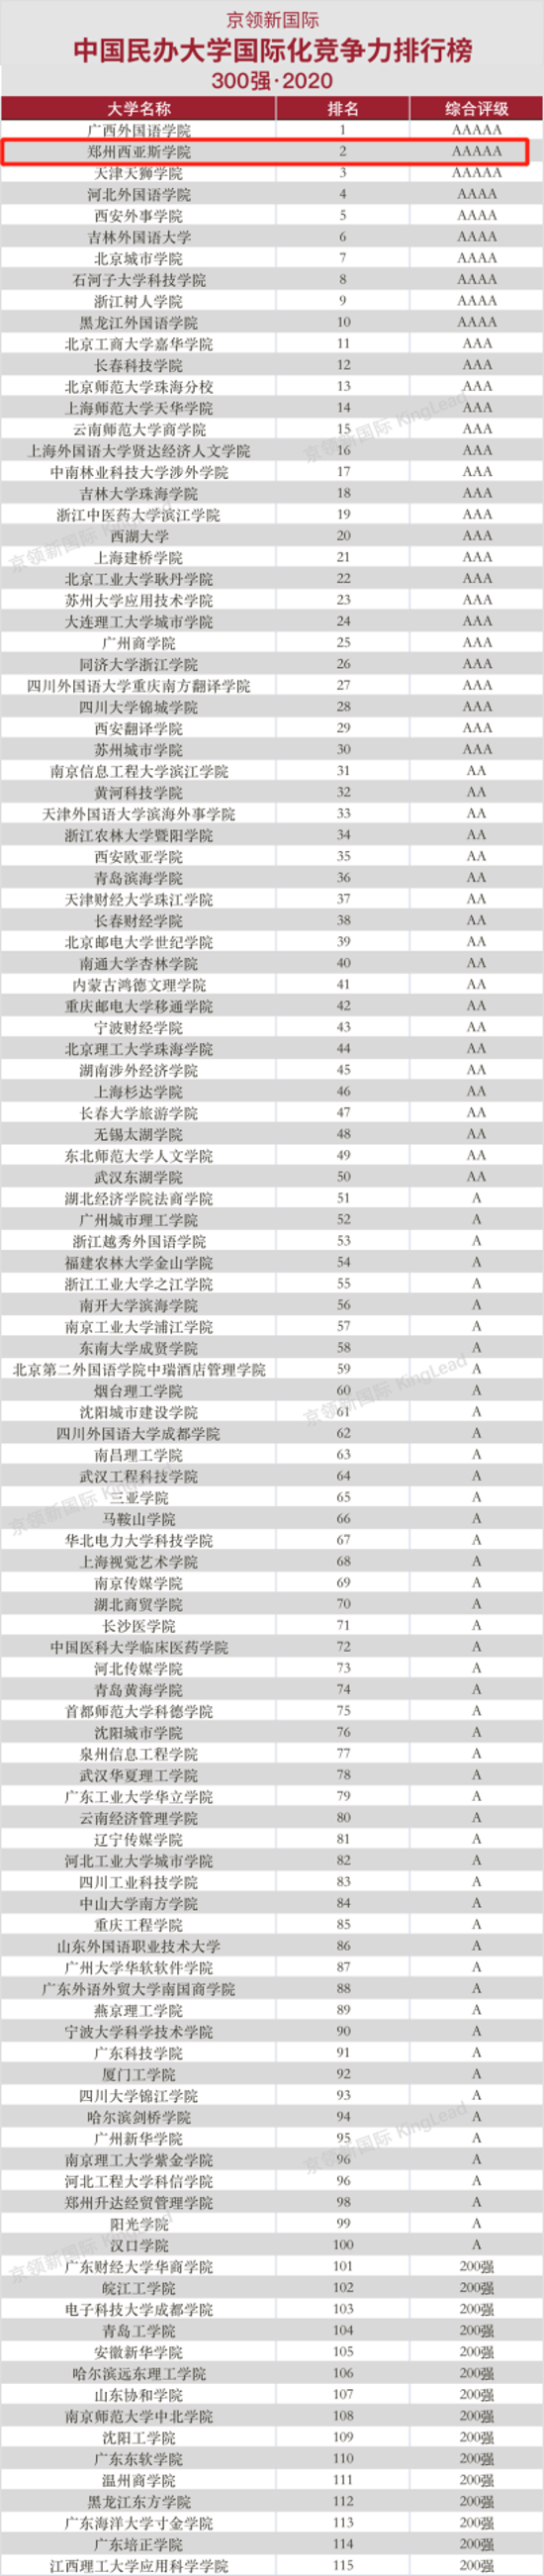 郑州西亚斯学院在“2020年中国民办大学国际化竞争力300强榜单”中位列全国第二